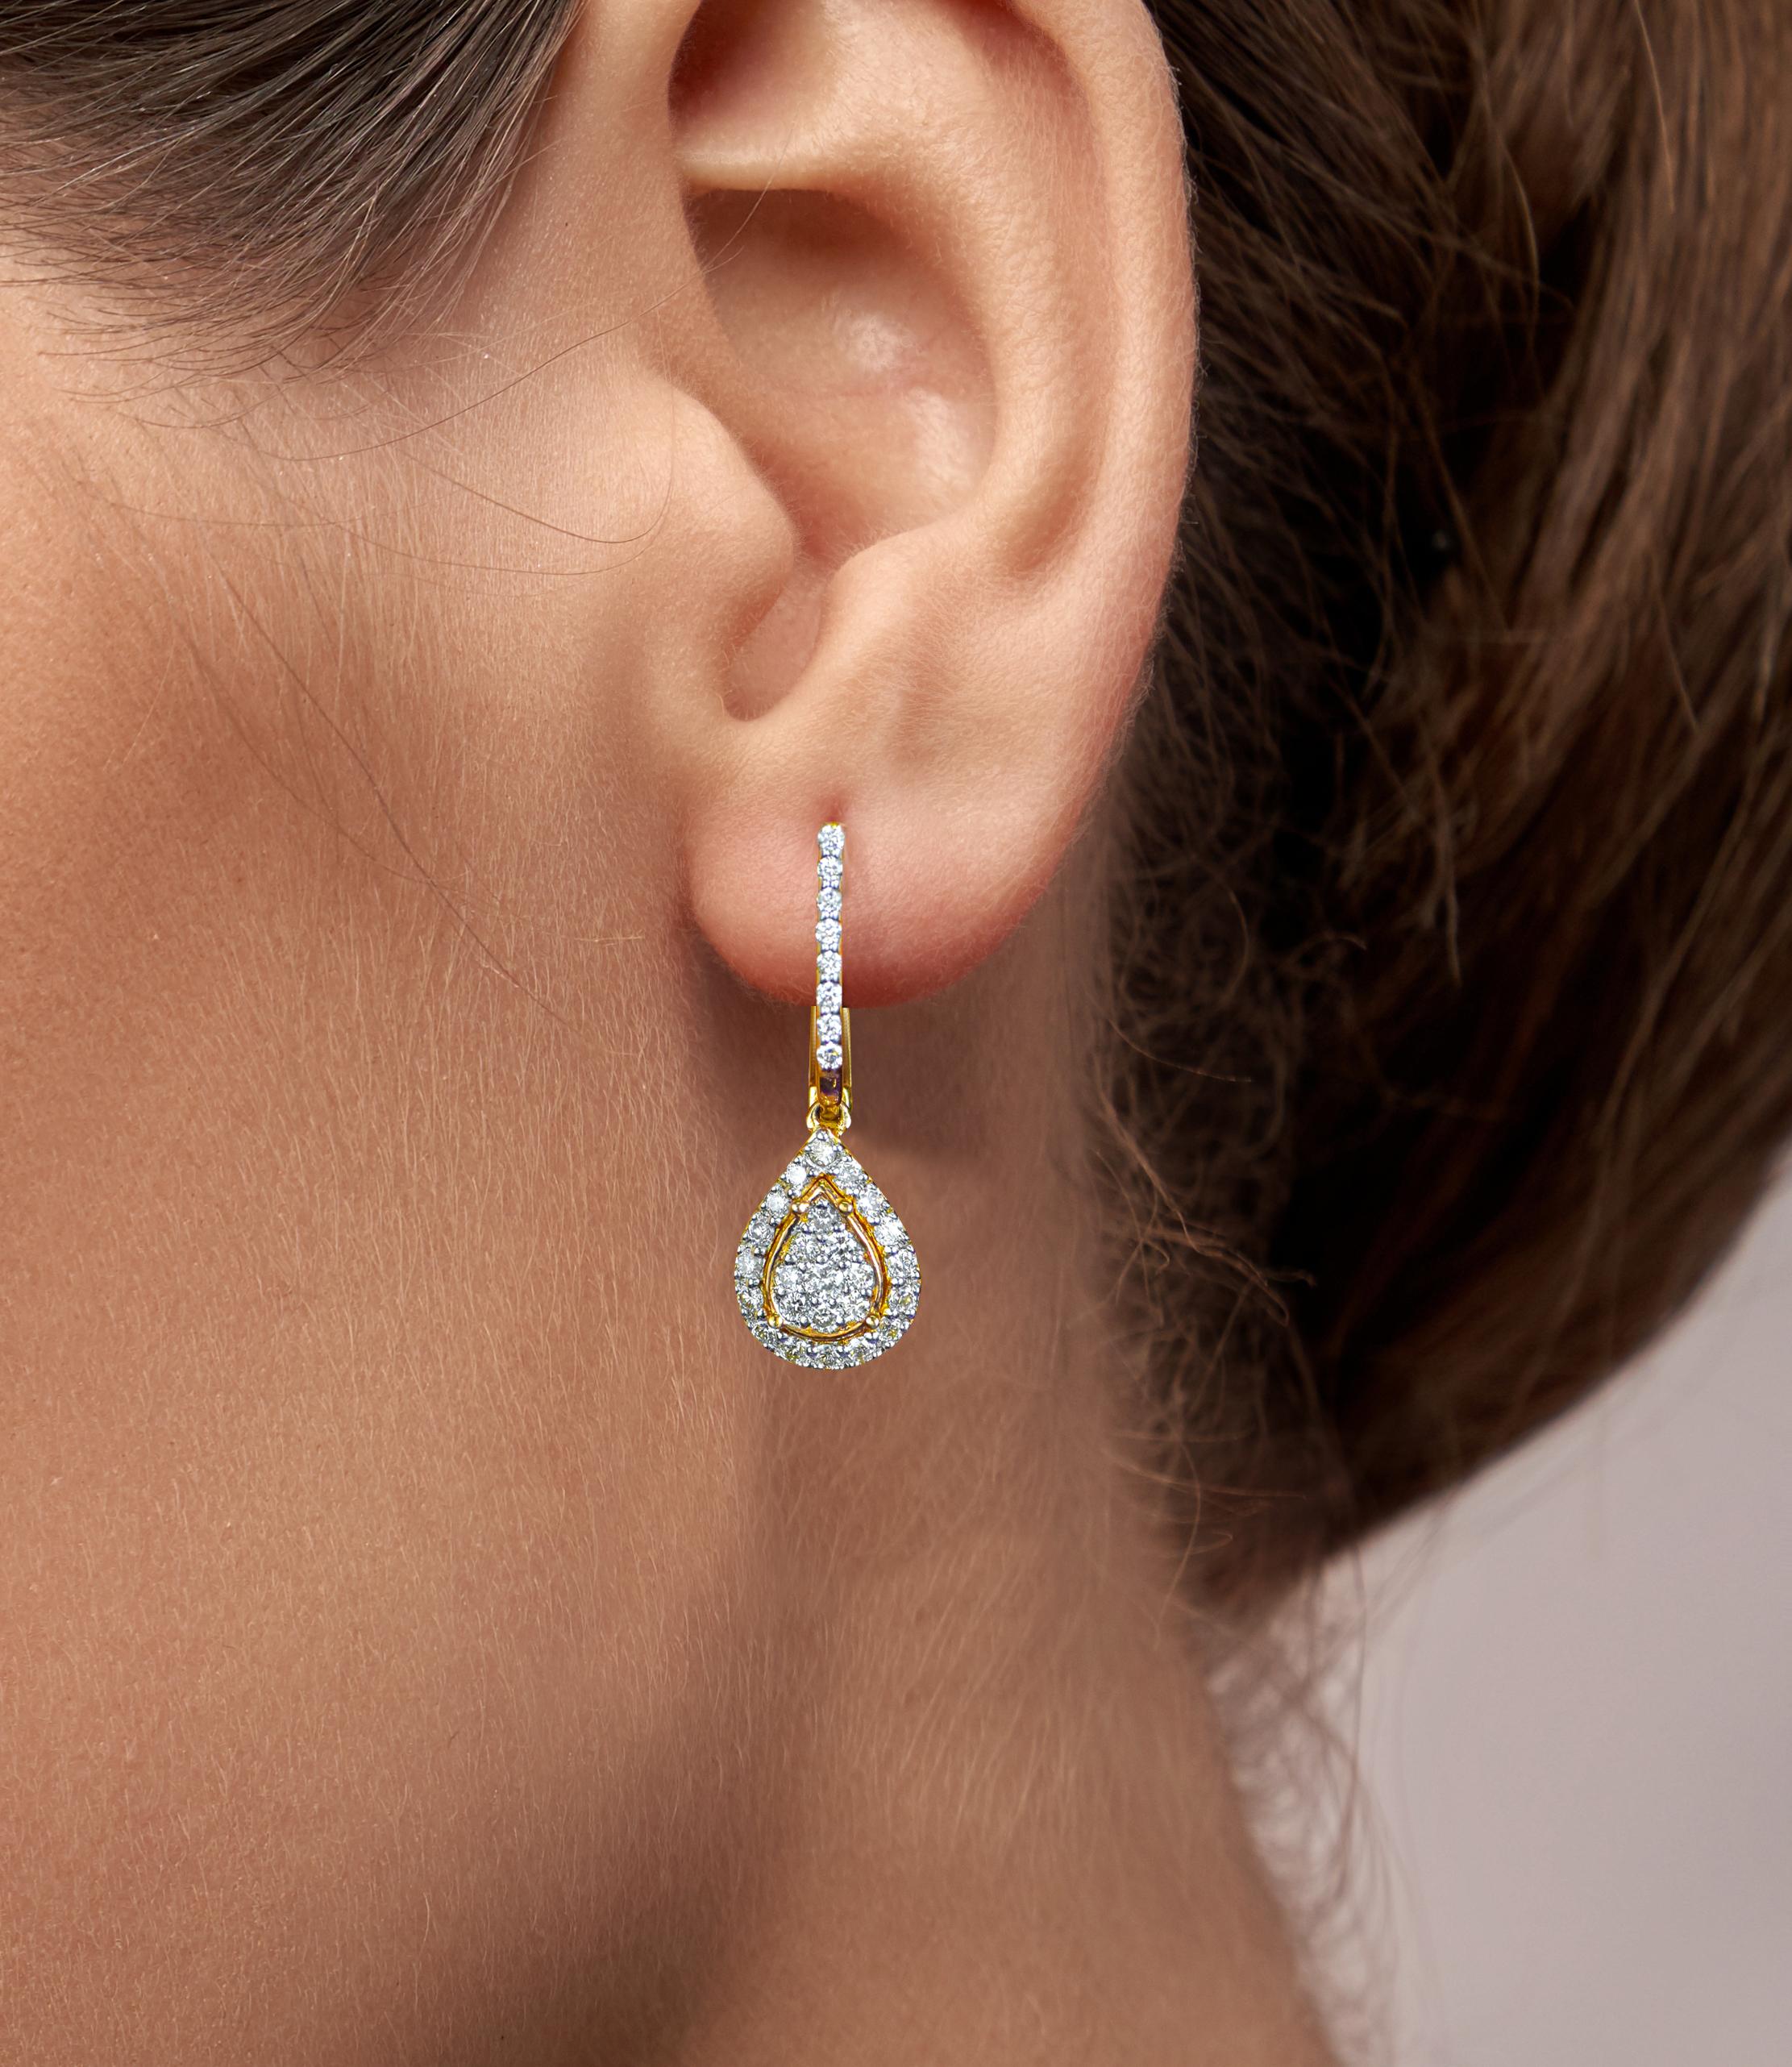 0.73 Carat Diamond Pear Shaped Drop Earrings in 18k Gold For Sale 2